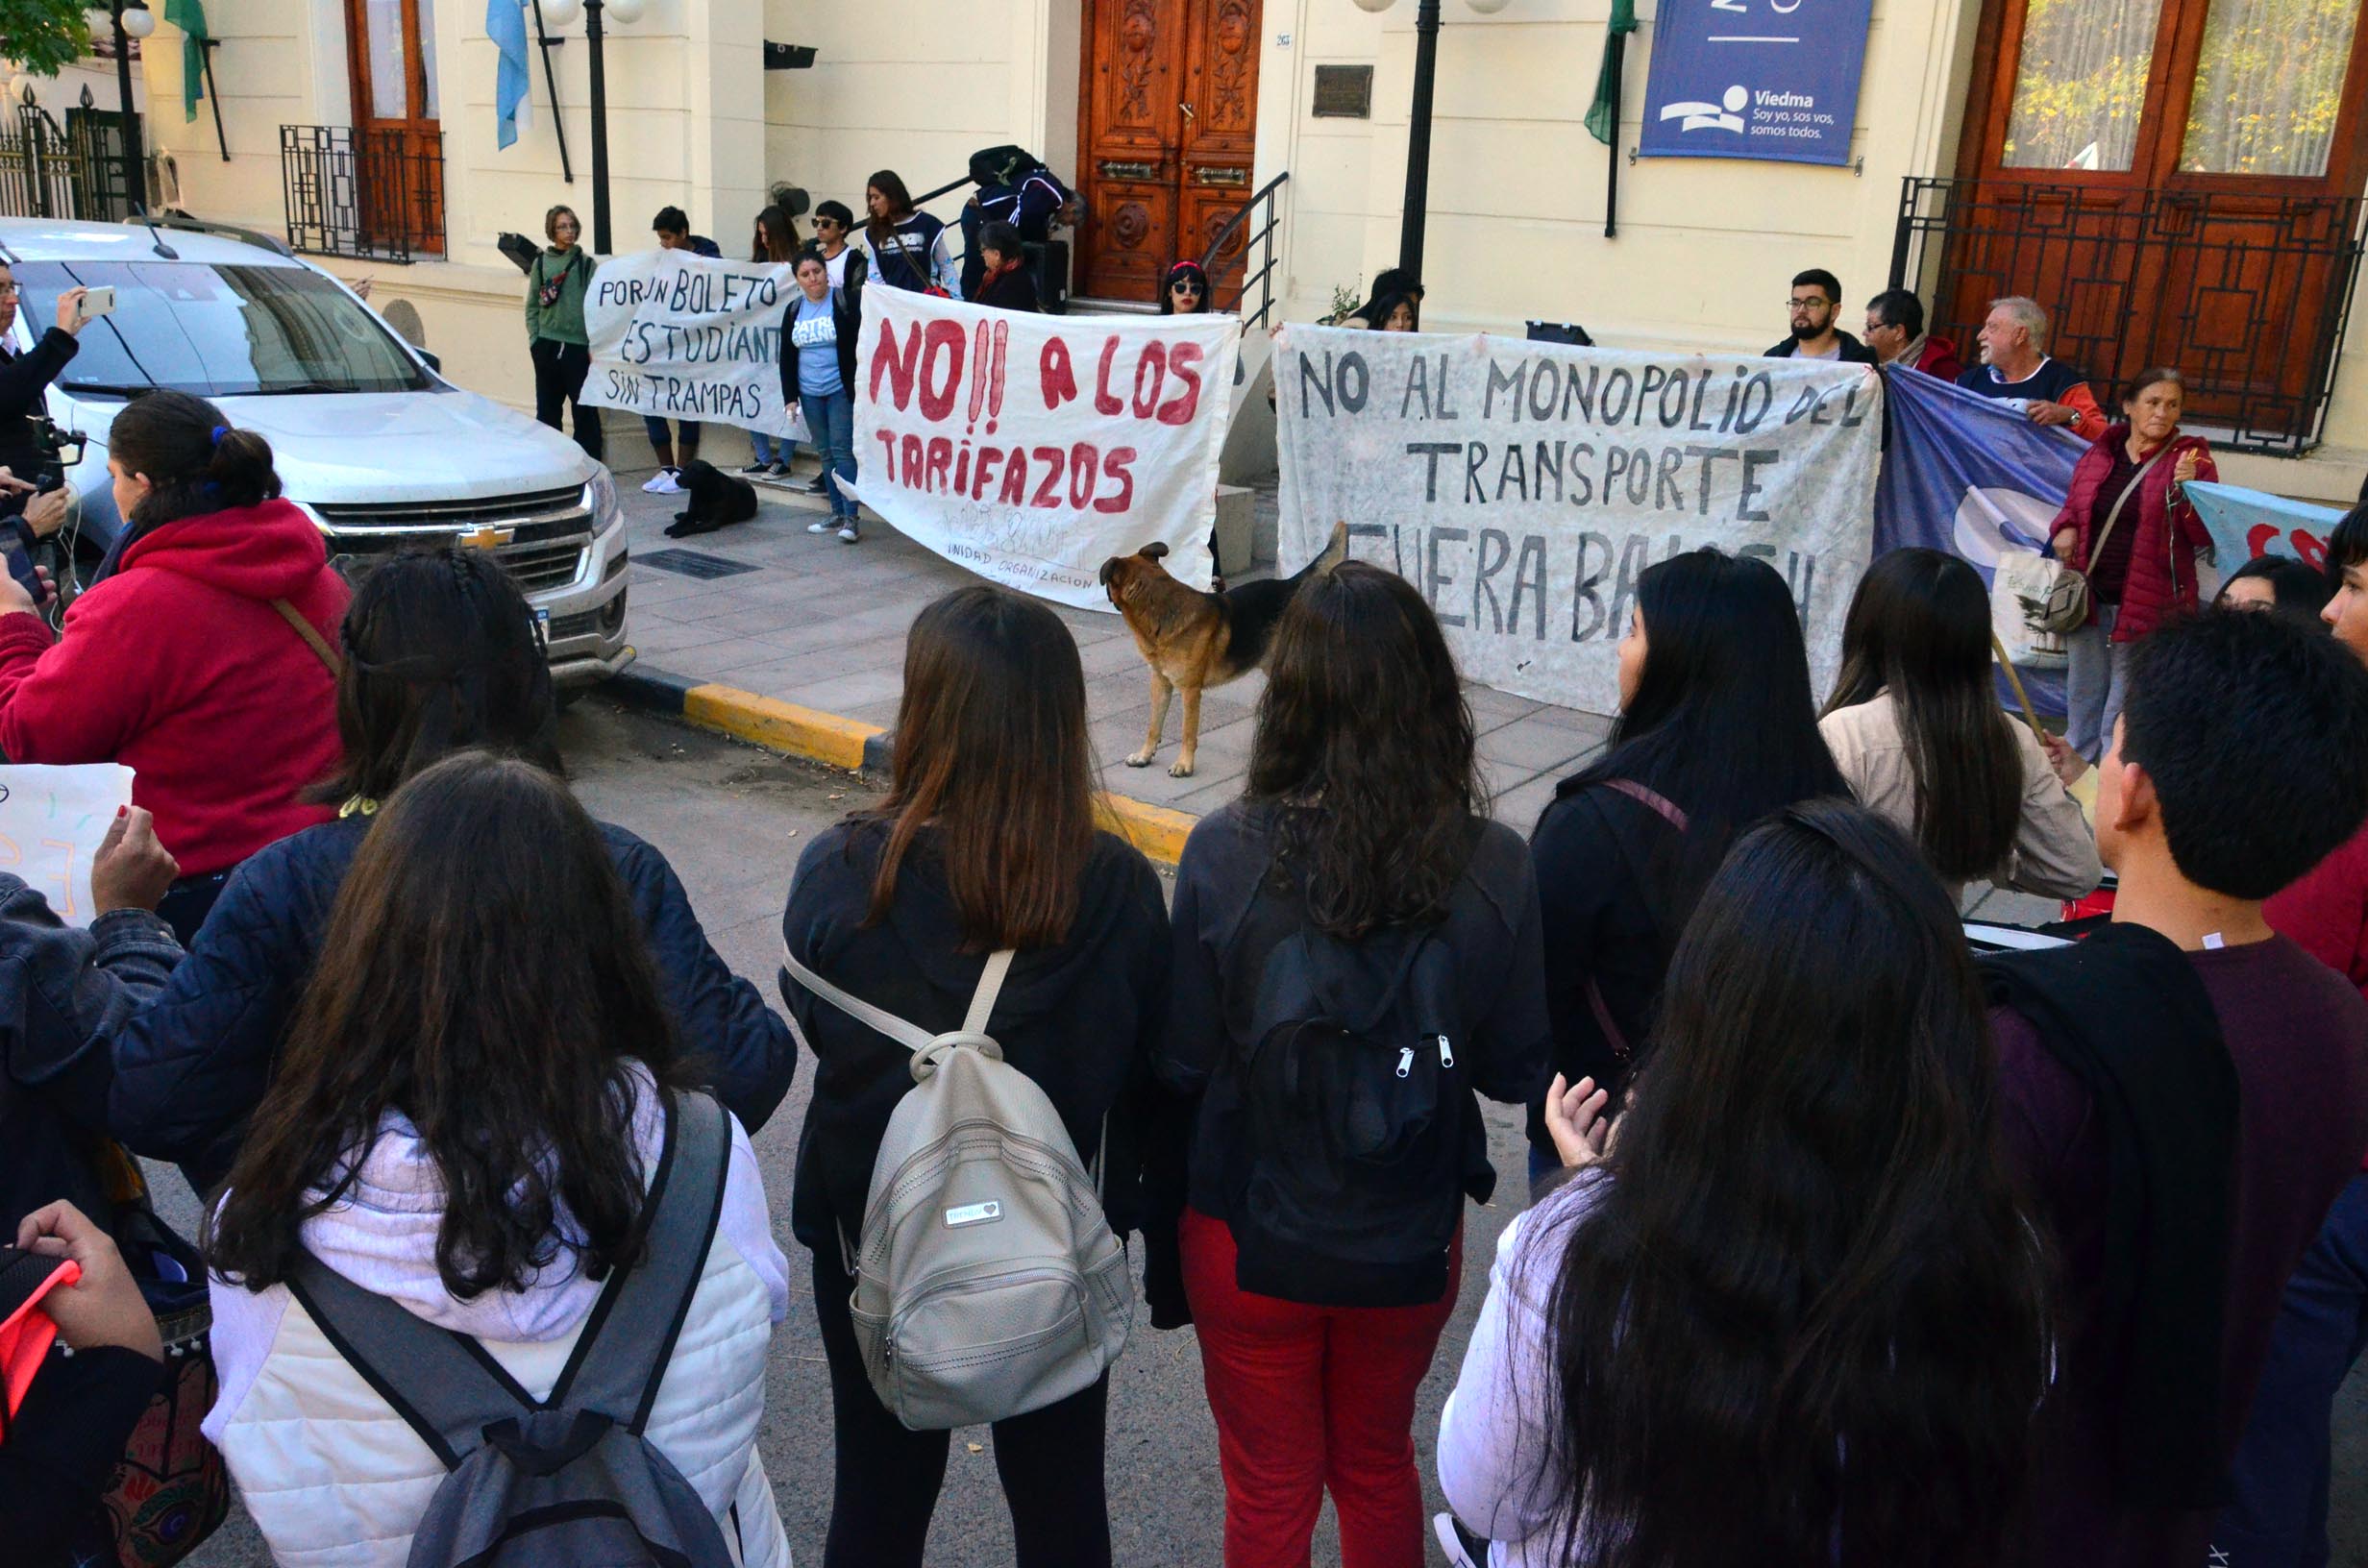 La marcha terminó frente a la sede central del municipio donde se entregó un petitorio. Fotos: Marcelo Ochoa